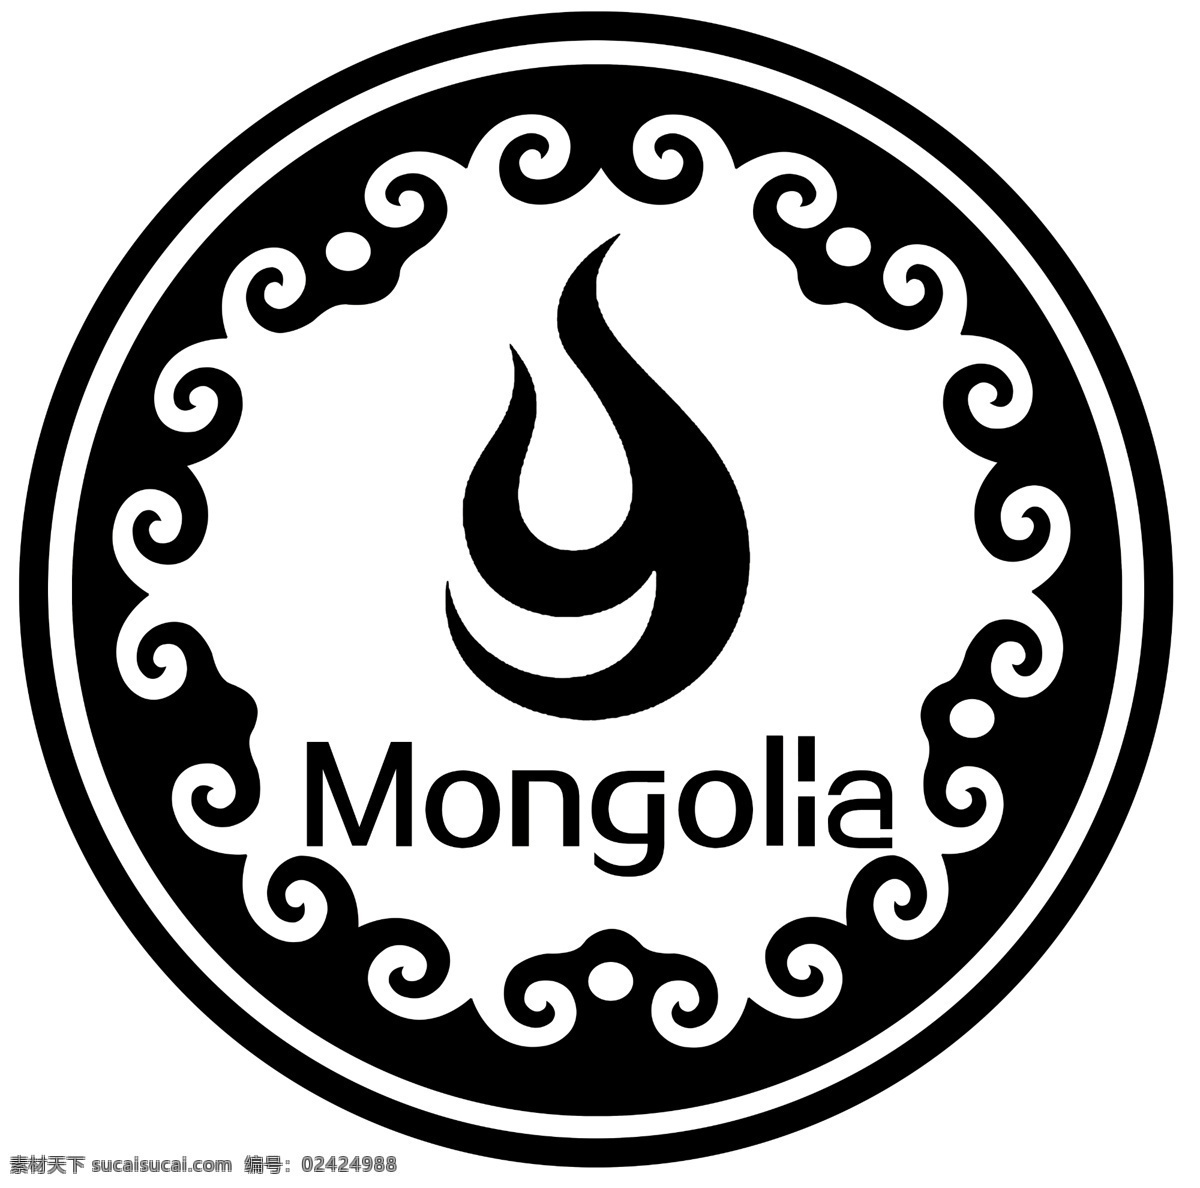 蒙古标志 蒙古 特色 标志 防伪 内蒙古